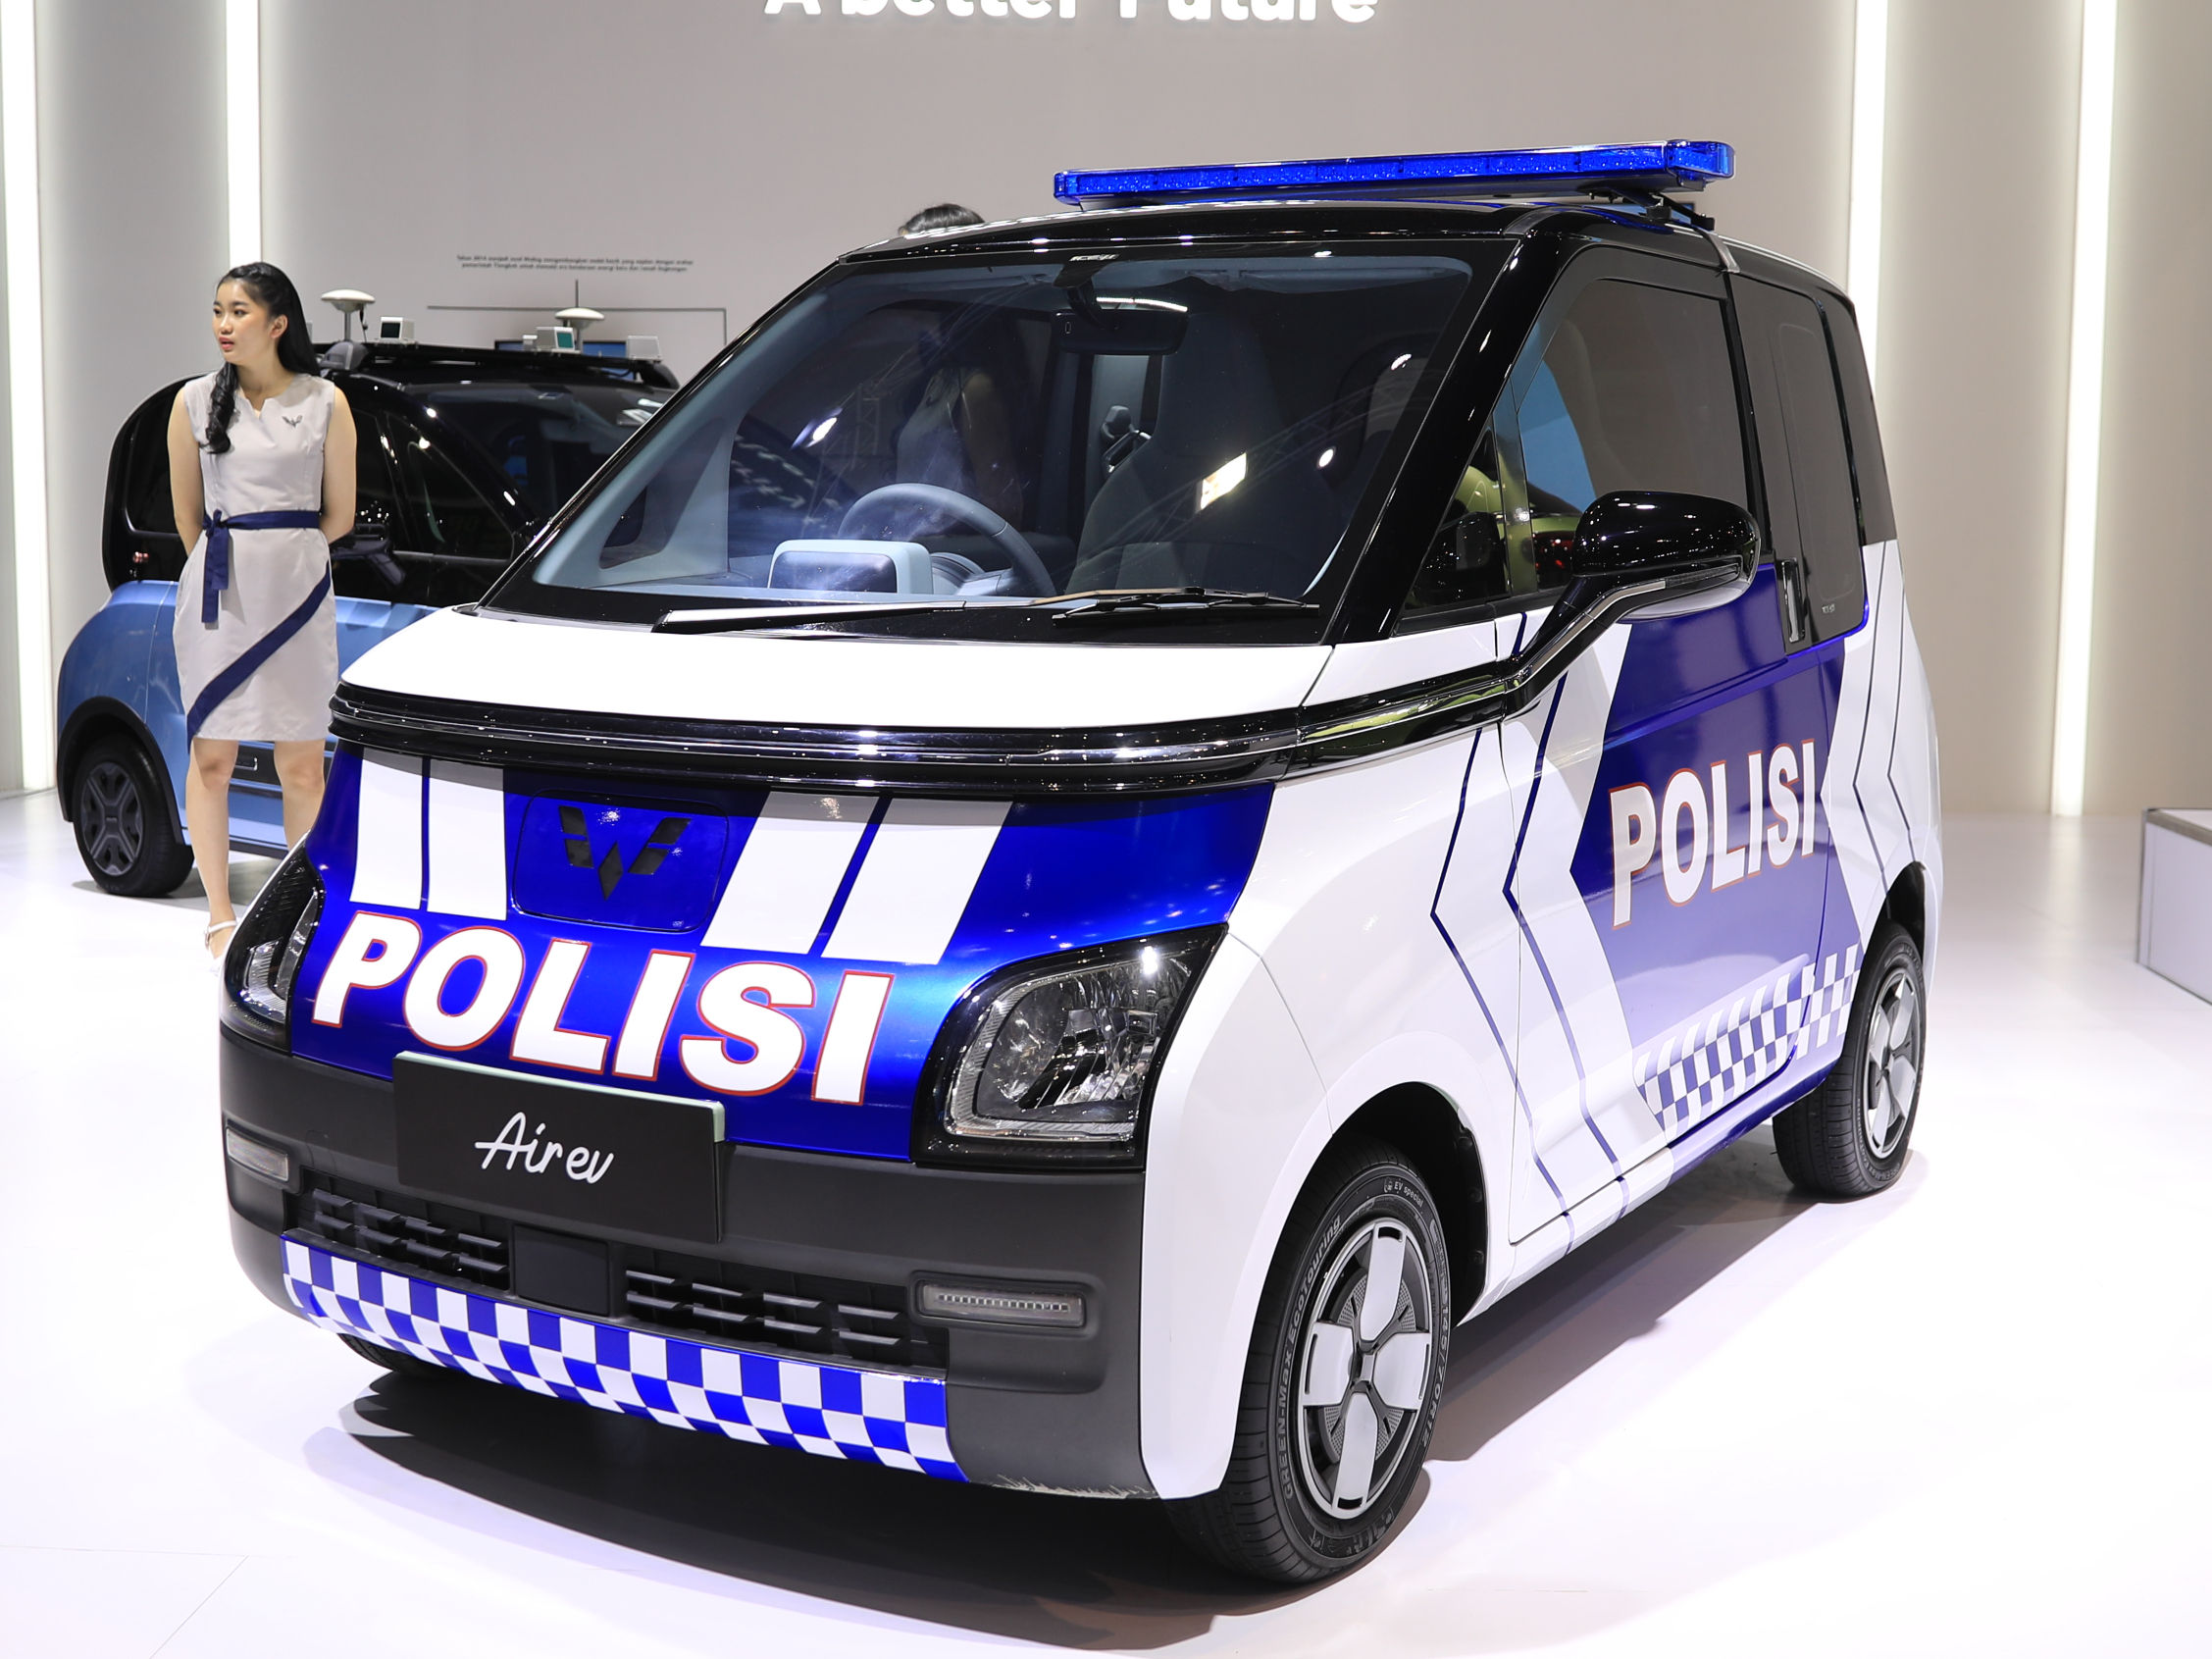 MG Comet EV (Wuling Air EV) Police Edition dipamerkan di Indonesia